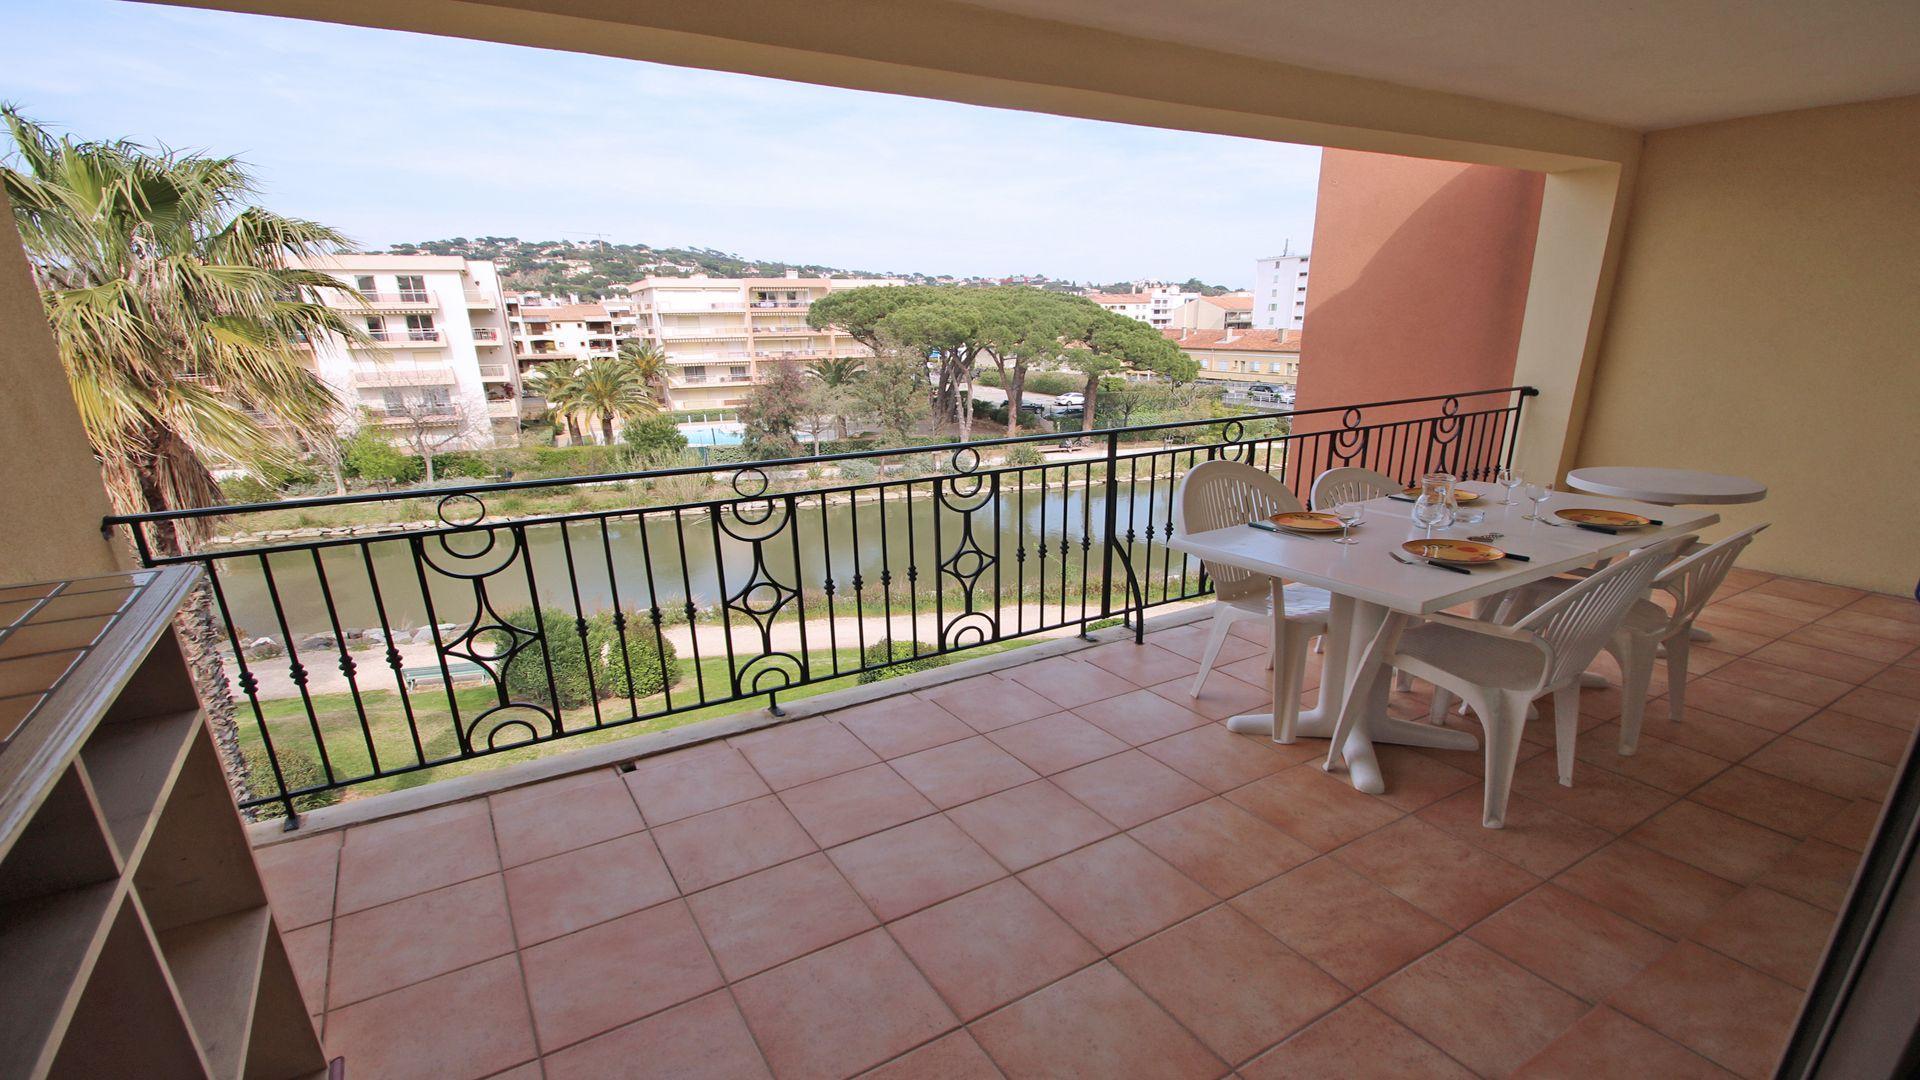 Ferienwohnung für 5 Personen ca. 39 m² i Ferienwohnung  Côte d'Azur